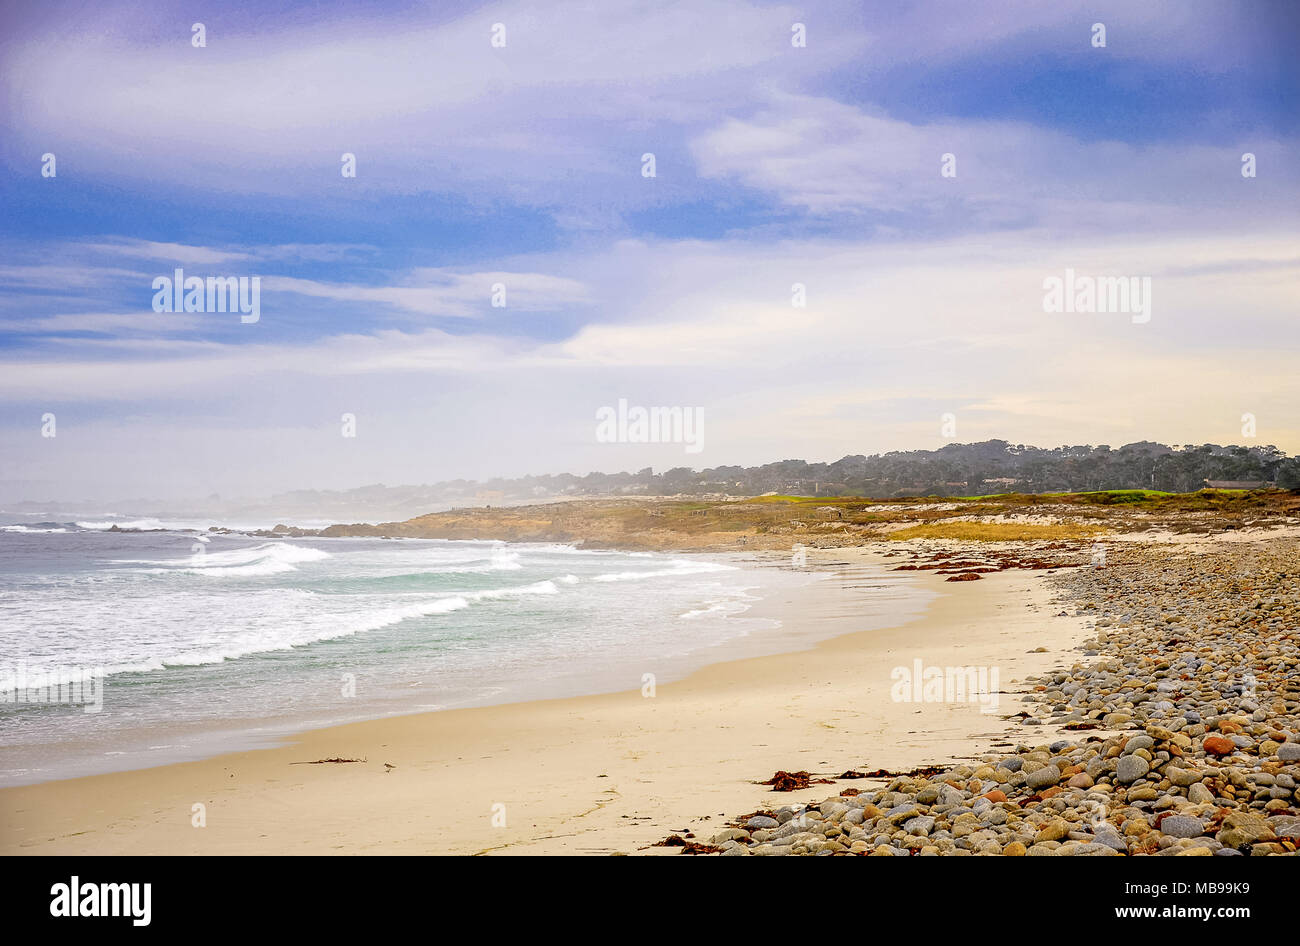 Paysage marin de l'océan Pacifique, à Pebble Beach, près de Monterey, Californie. Fond brumeux, le fracas des vagues, sable, roches colorées et bleu, ciel nuageux Banque D'Images